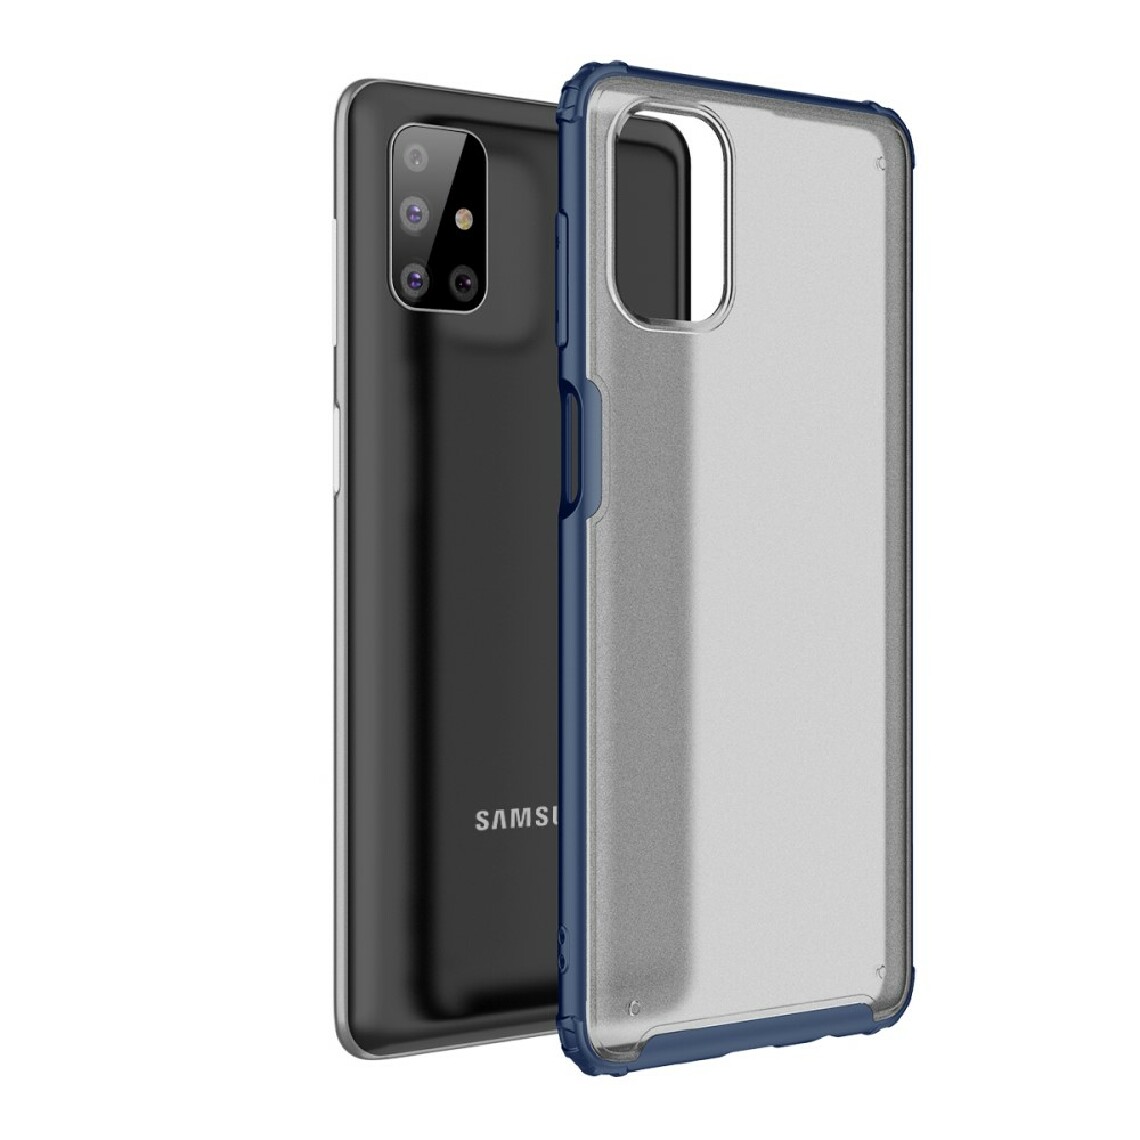 Other - Coque en TPU hybride mat antichoc souple bleu marine pour votre Samsung Galaxy M51 - Coque, étui smartphone